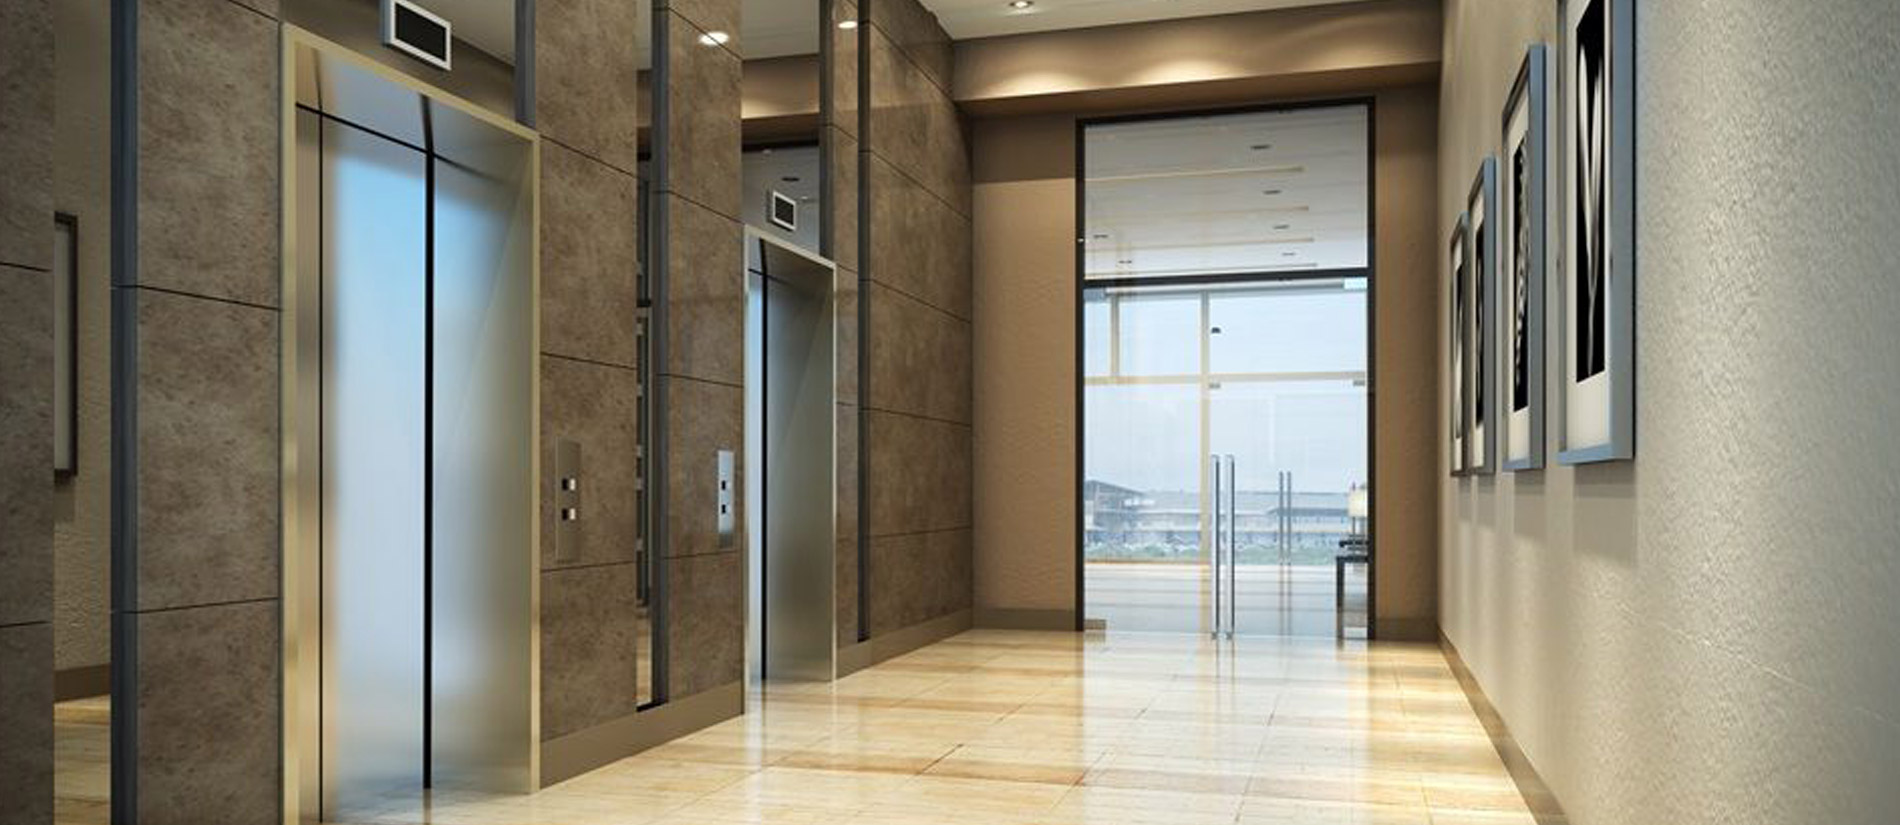 Premium Elevator Solutions